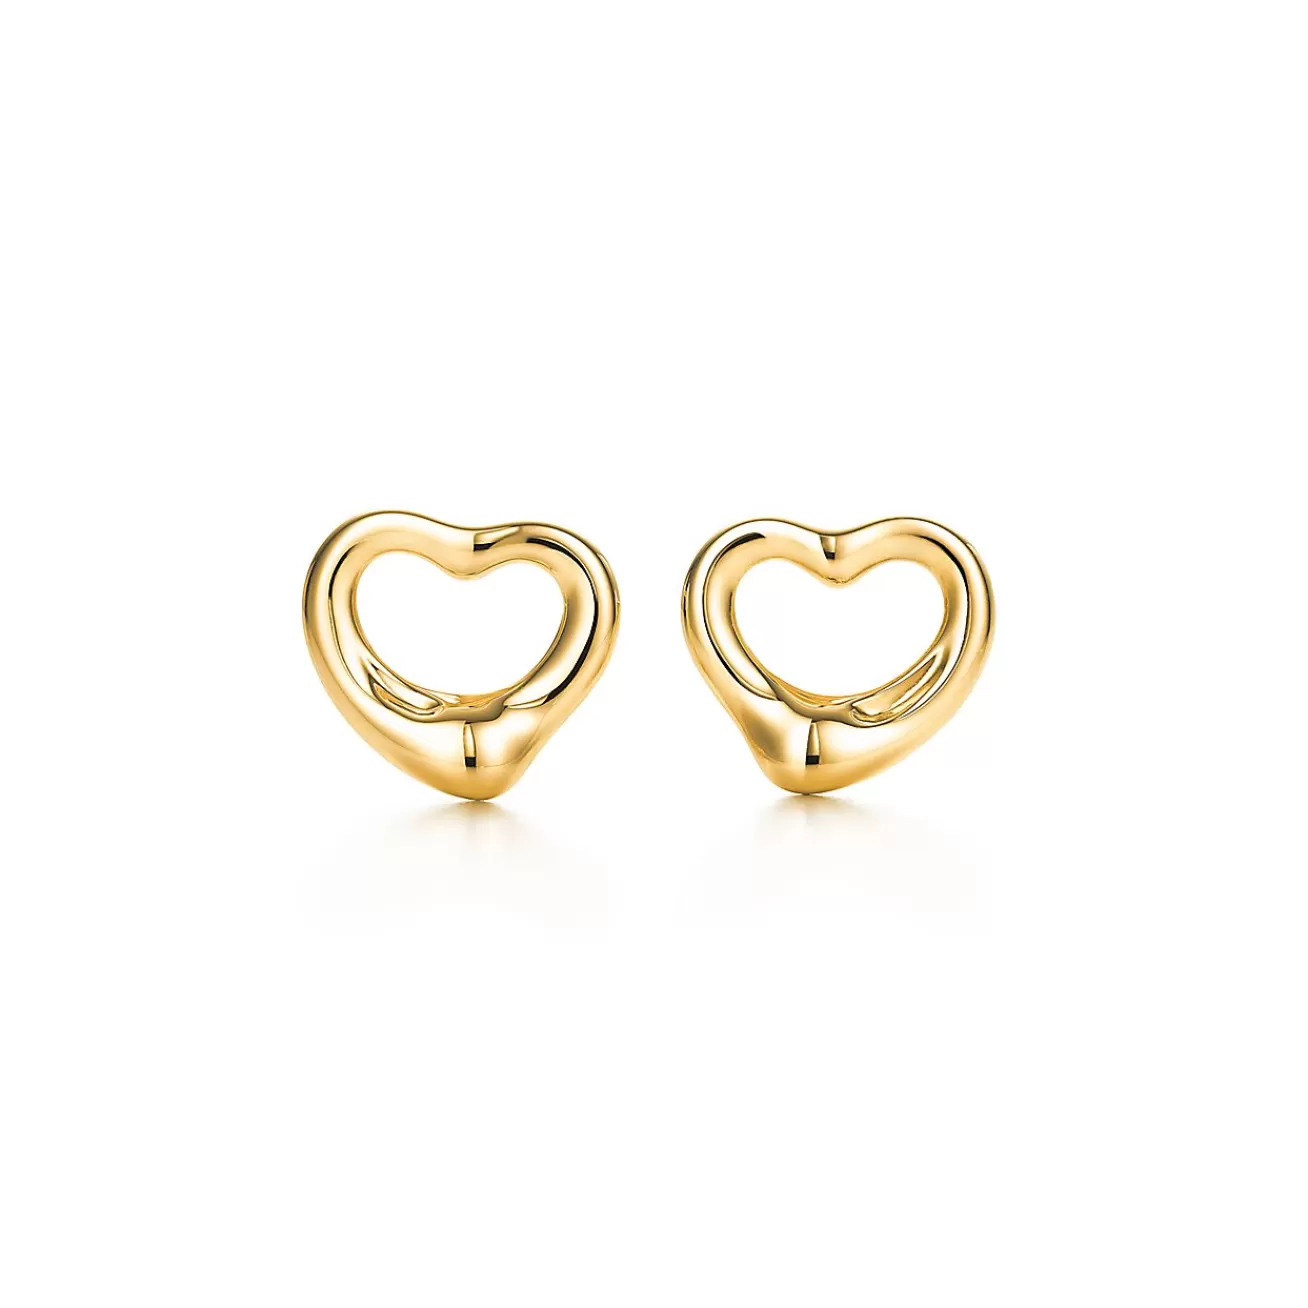 Tiffany & Co. Elsa Peretti® Open Heart Stud Earrings in Yellow Gold, 11 mm | ^ Earrings